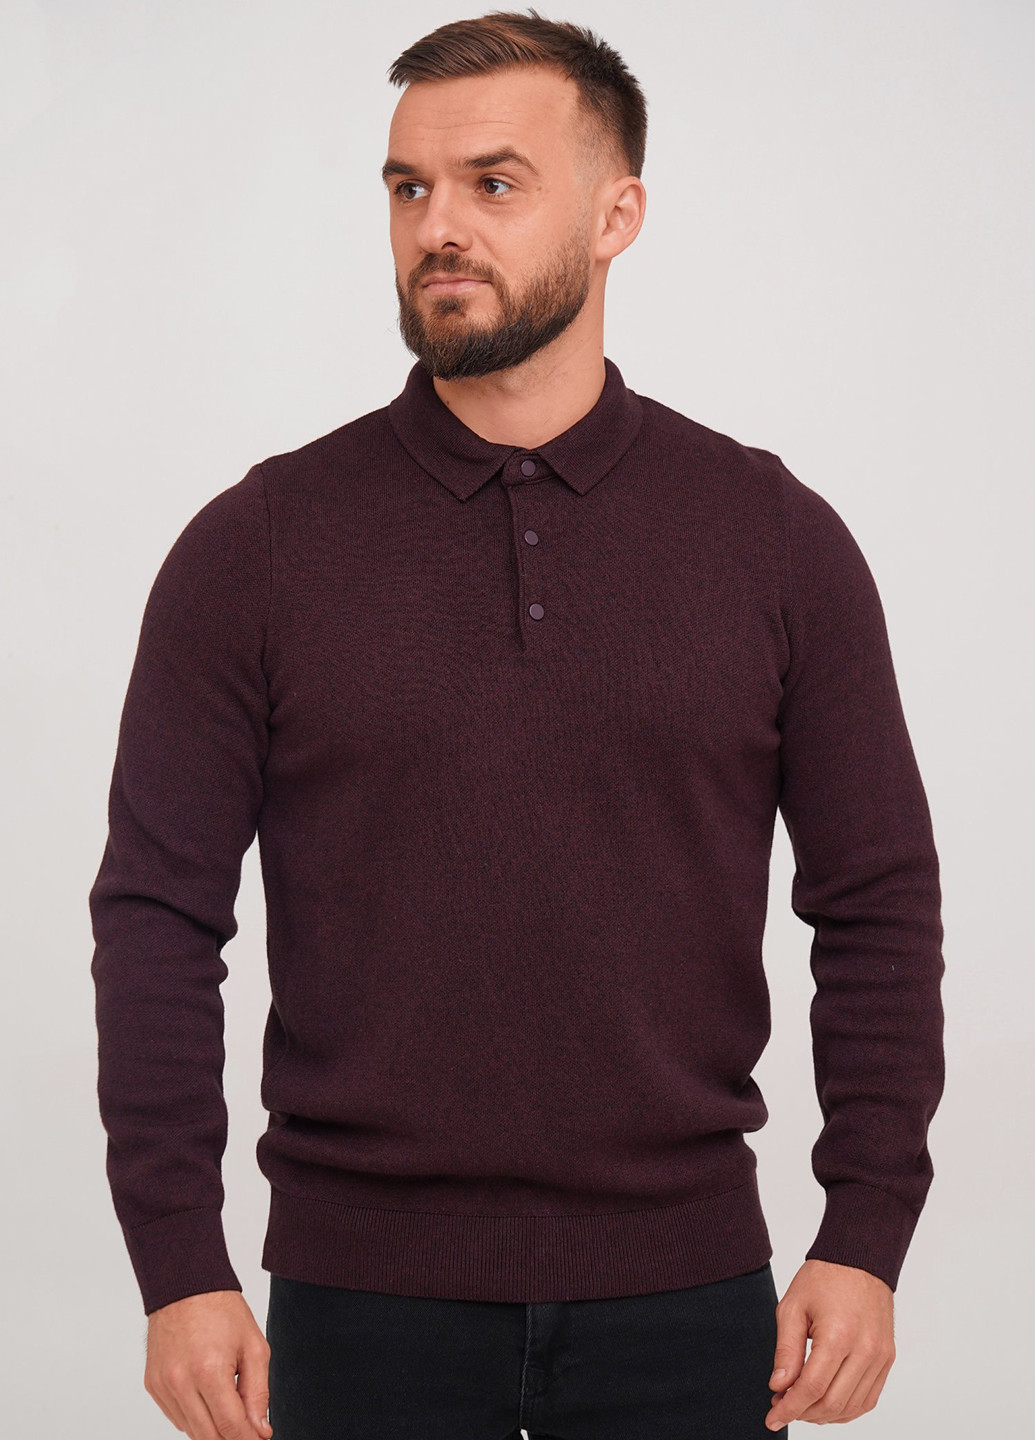 Бордовая футболка-поло для мужчин Trend Collection меланжевая